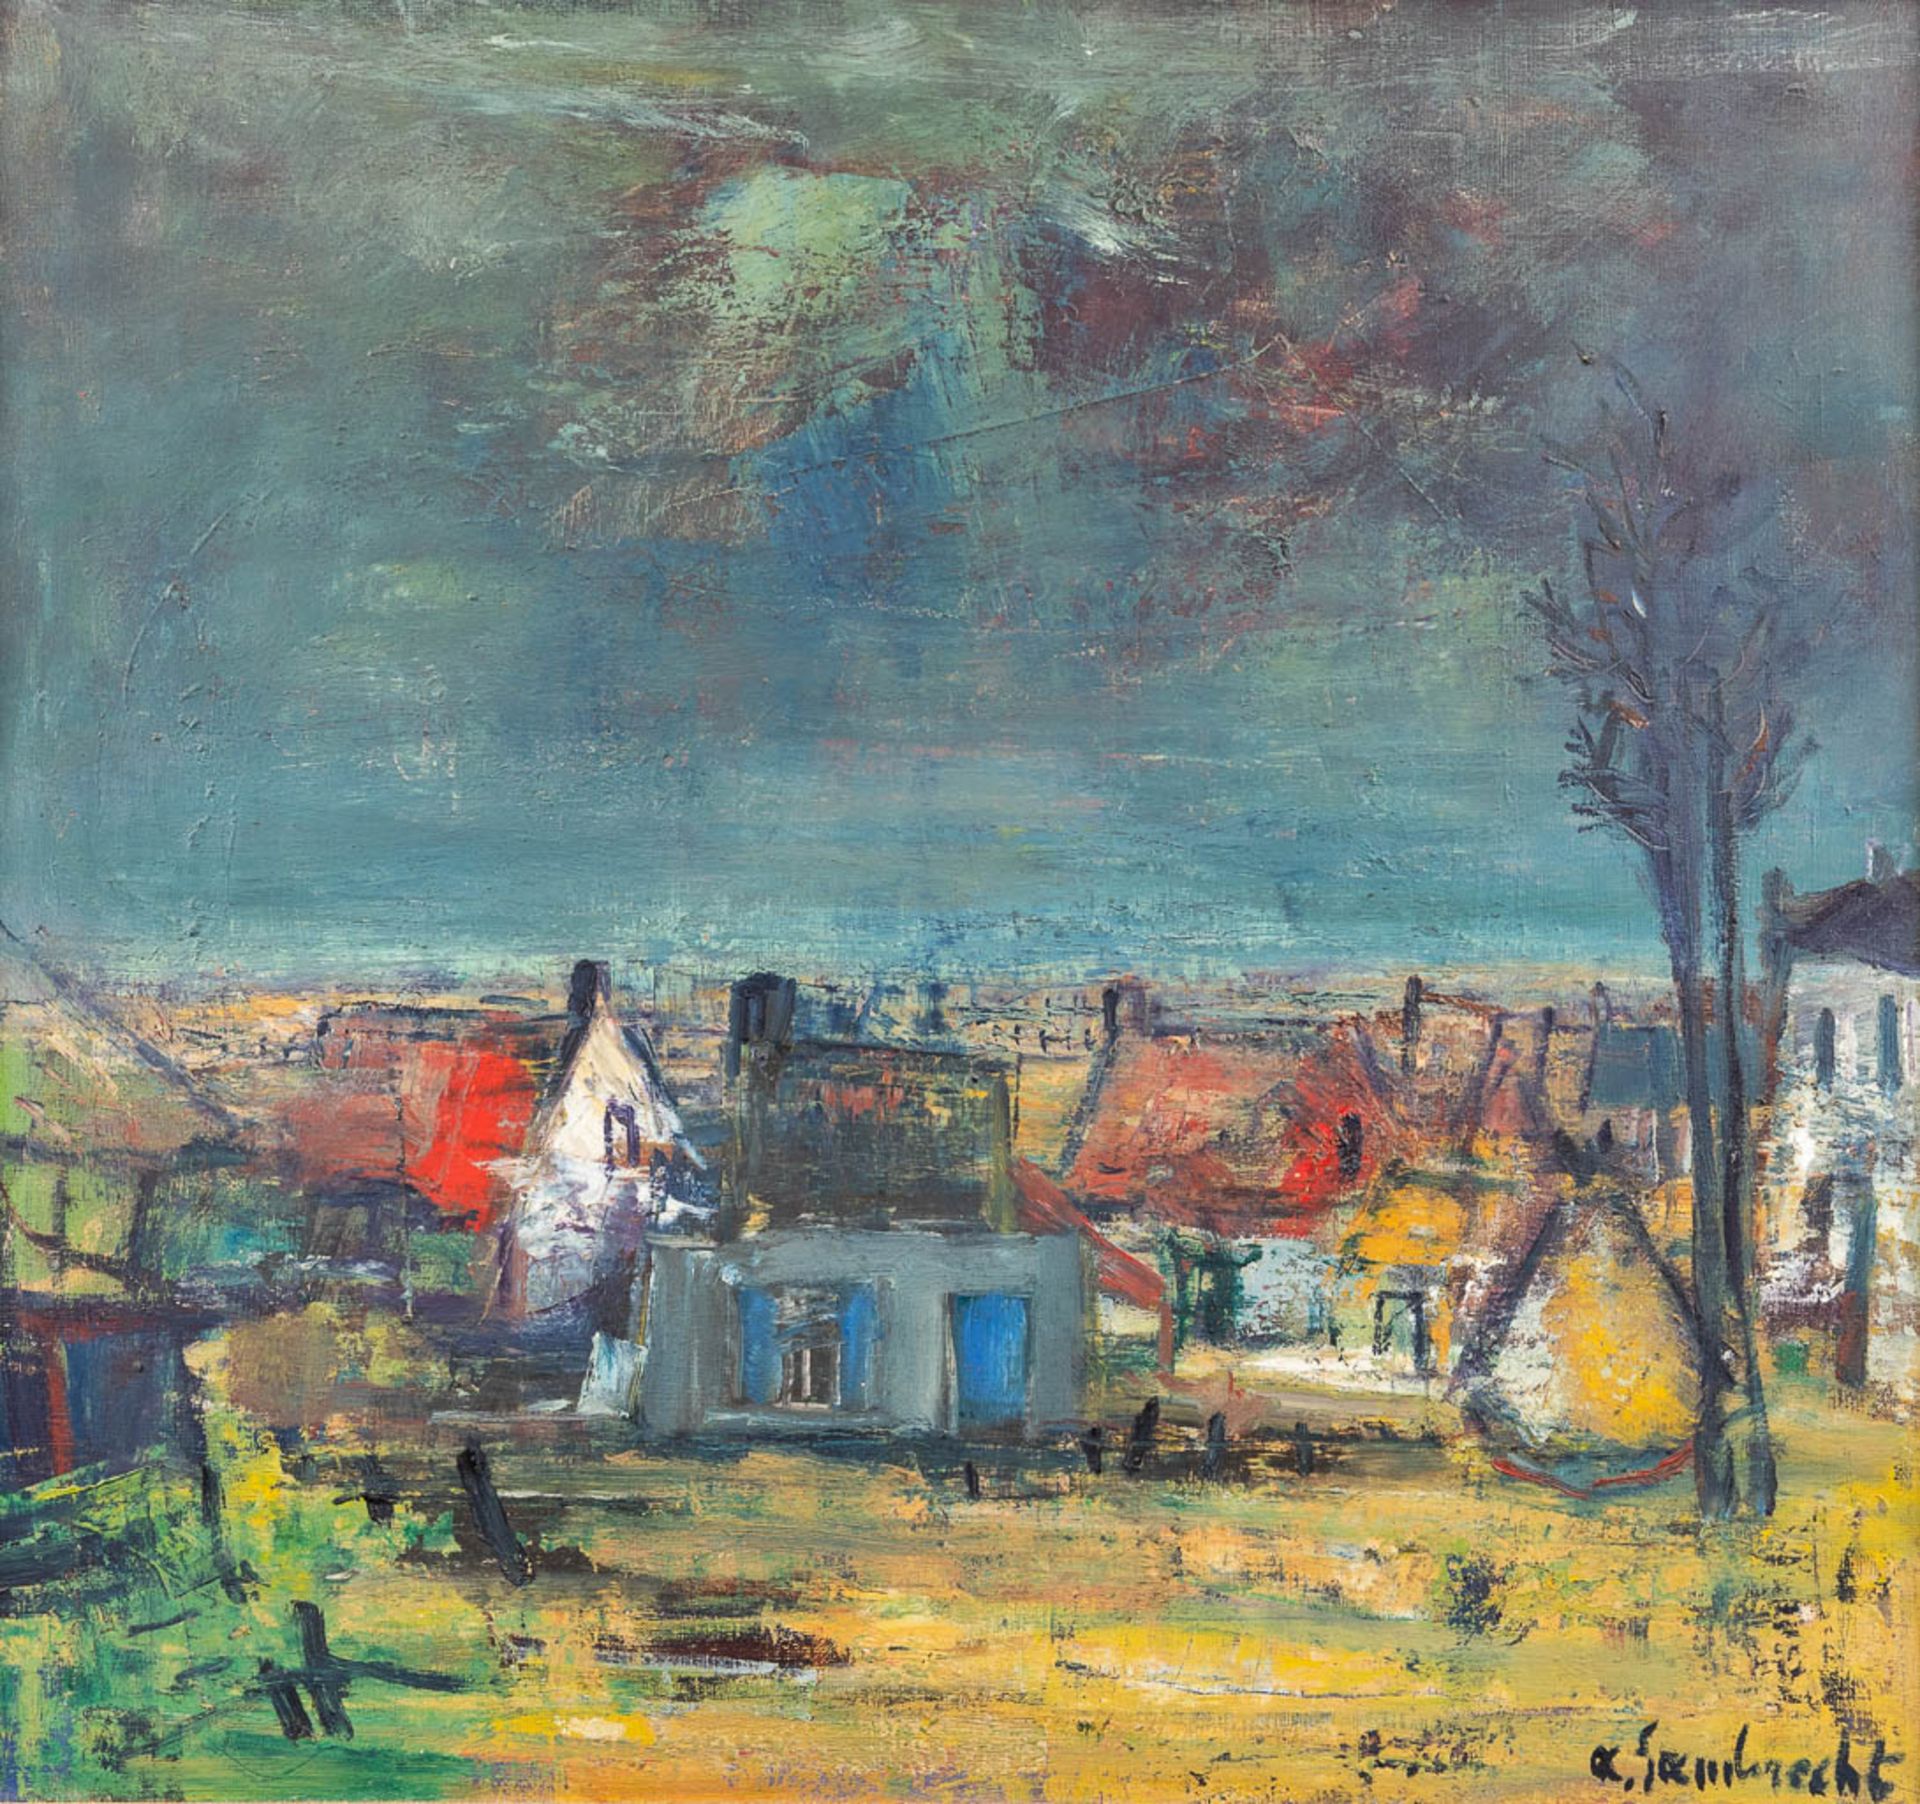 Arthur LAMBRECHT (1904-1983) 'Village View' oil on canvas. (W: 76 x H: 71 cm)